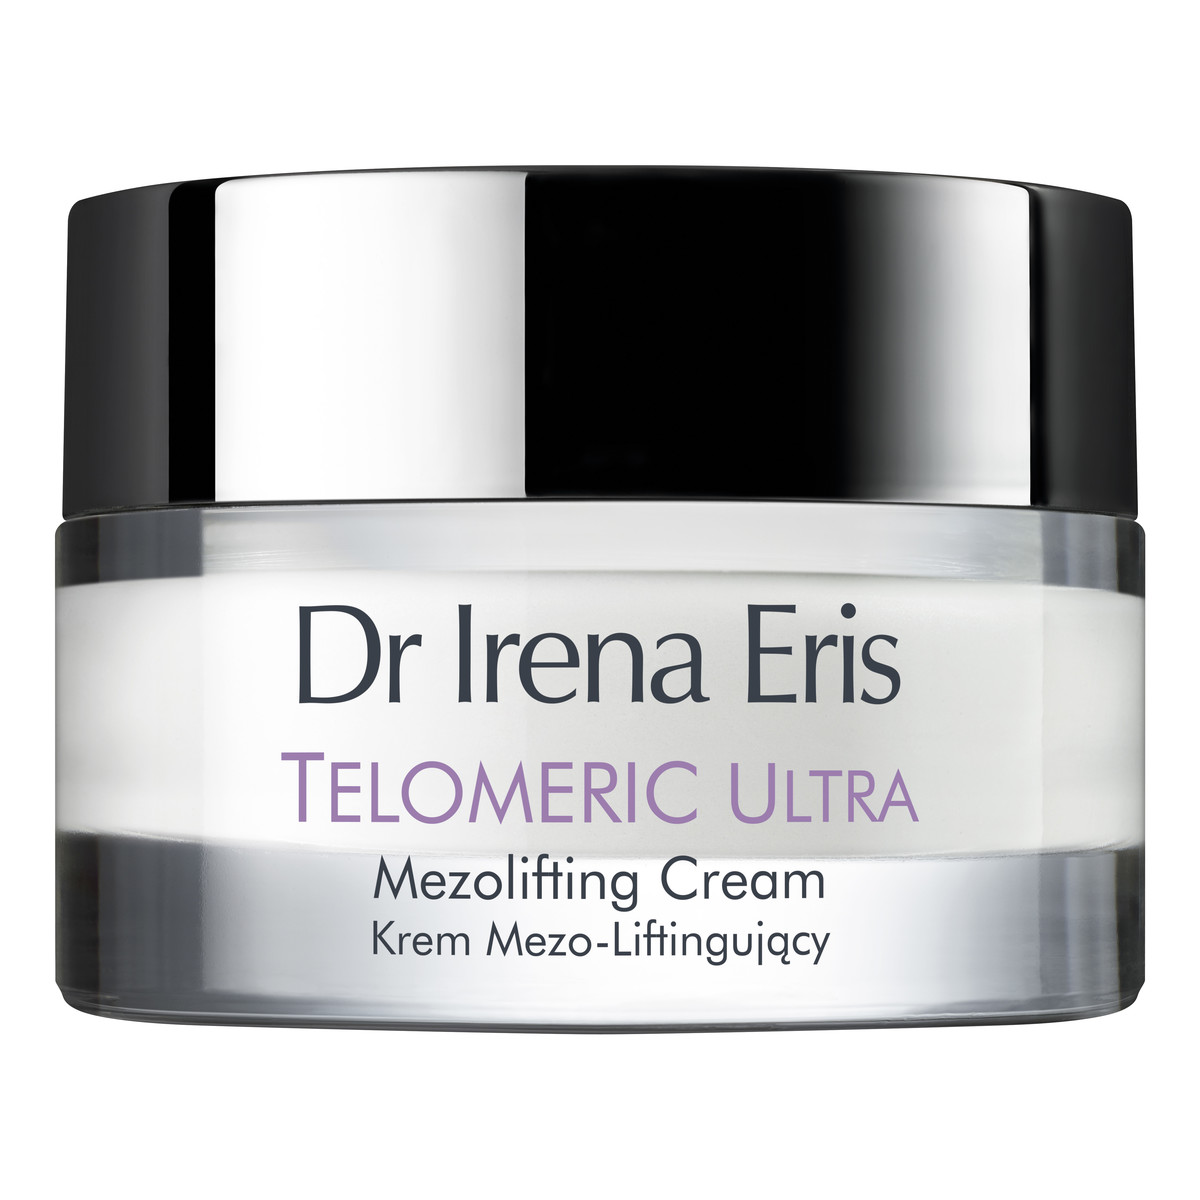 Dr Irena Eris 70+ Telomeric Ultra KREM MEZO-LIFTINGUJĄCY NA DZIEŃ SPF 15 50ml